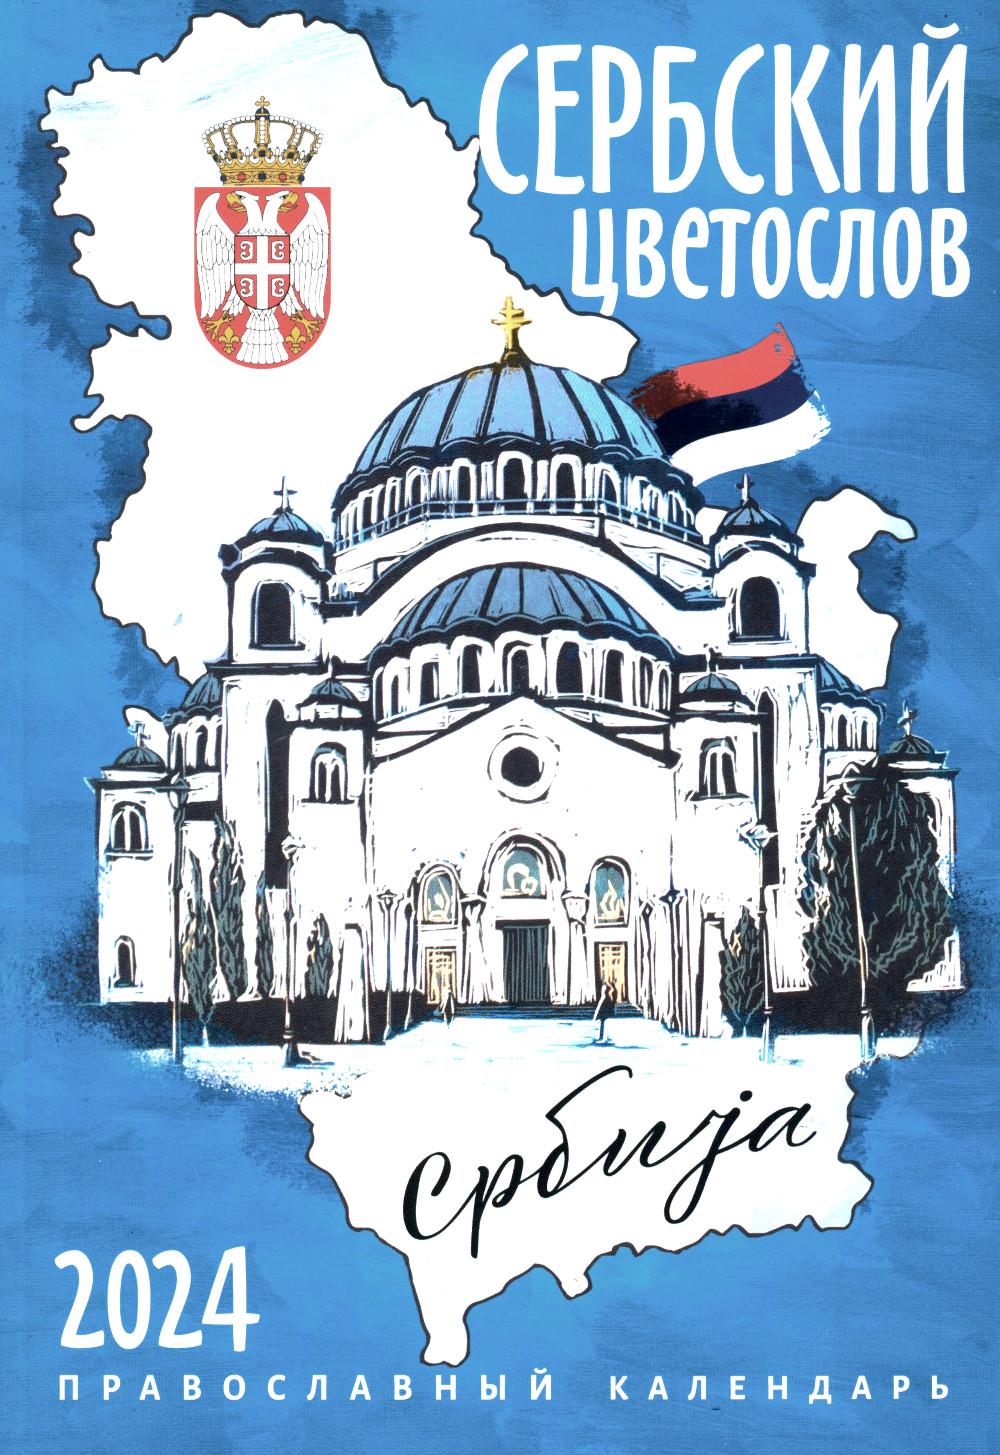 Календарь Сербский цветослов: Православный календарь 2024